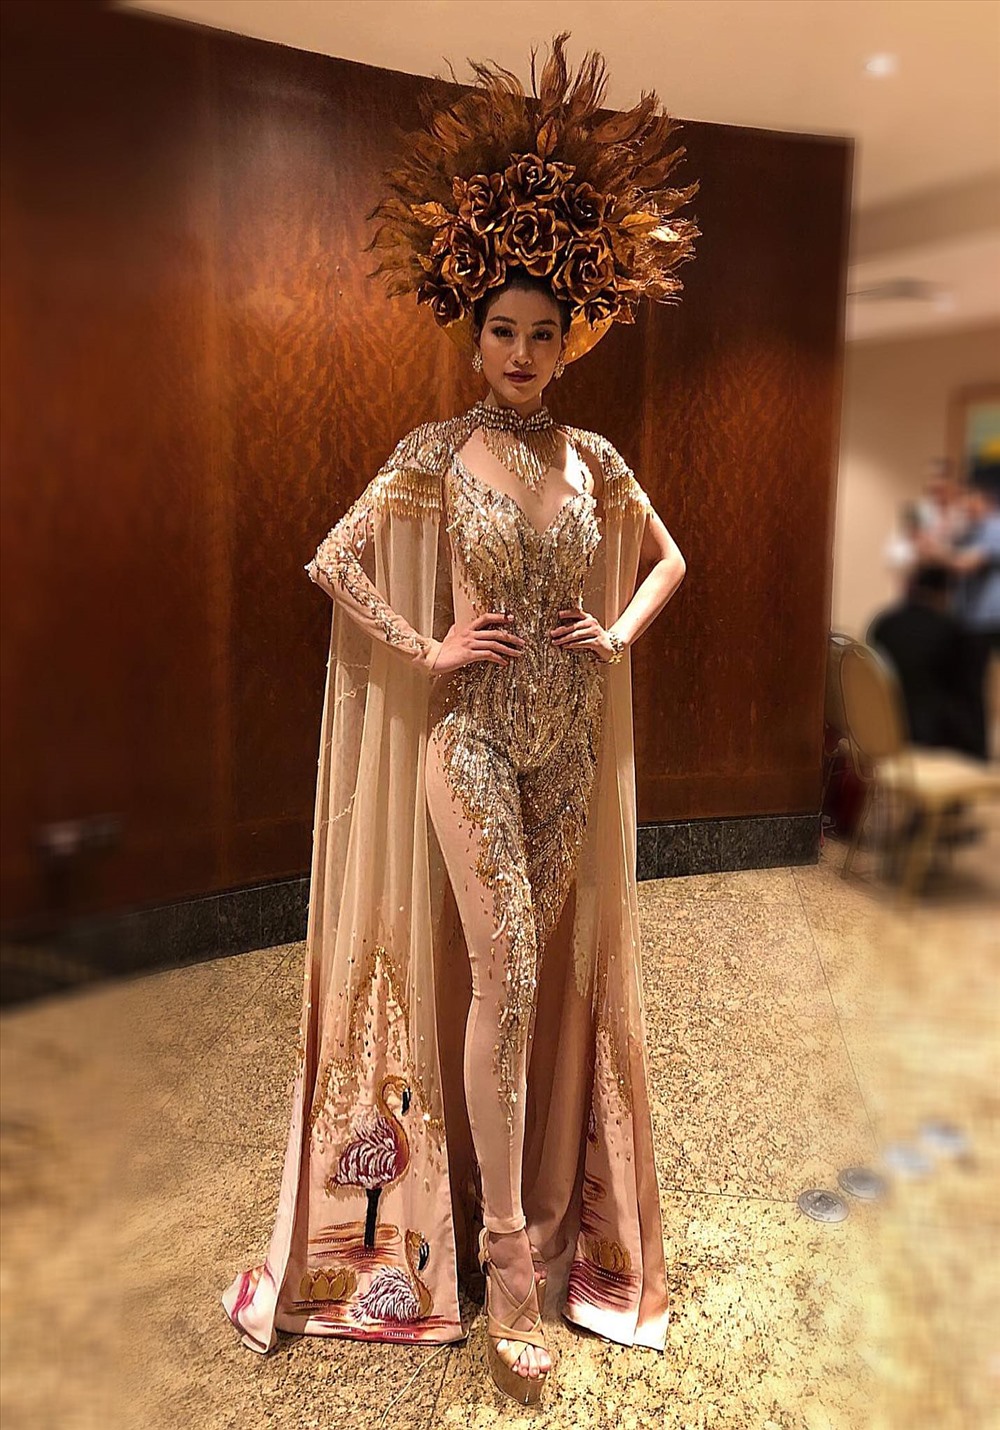 Khi diện trang phục “Nữ thần mặt trời” tại cuộc thi, cùng với thần thái rạng ngời, Nguyễn Phương Khánh đã thực sự chinh phục giám khảo.